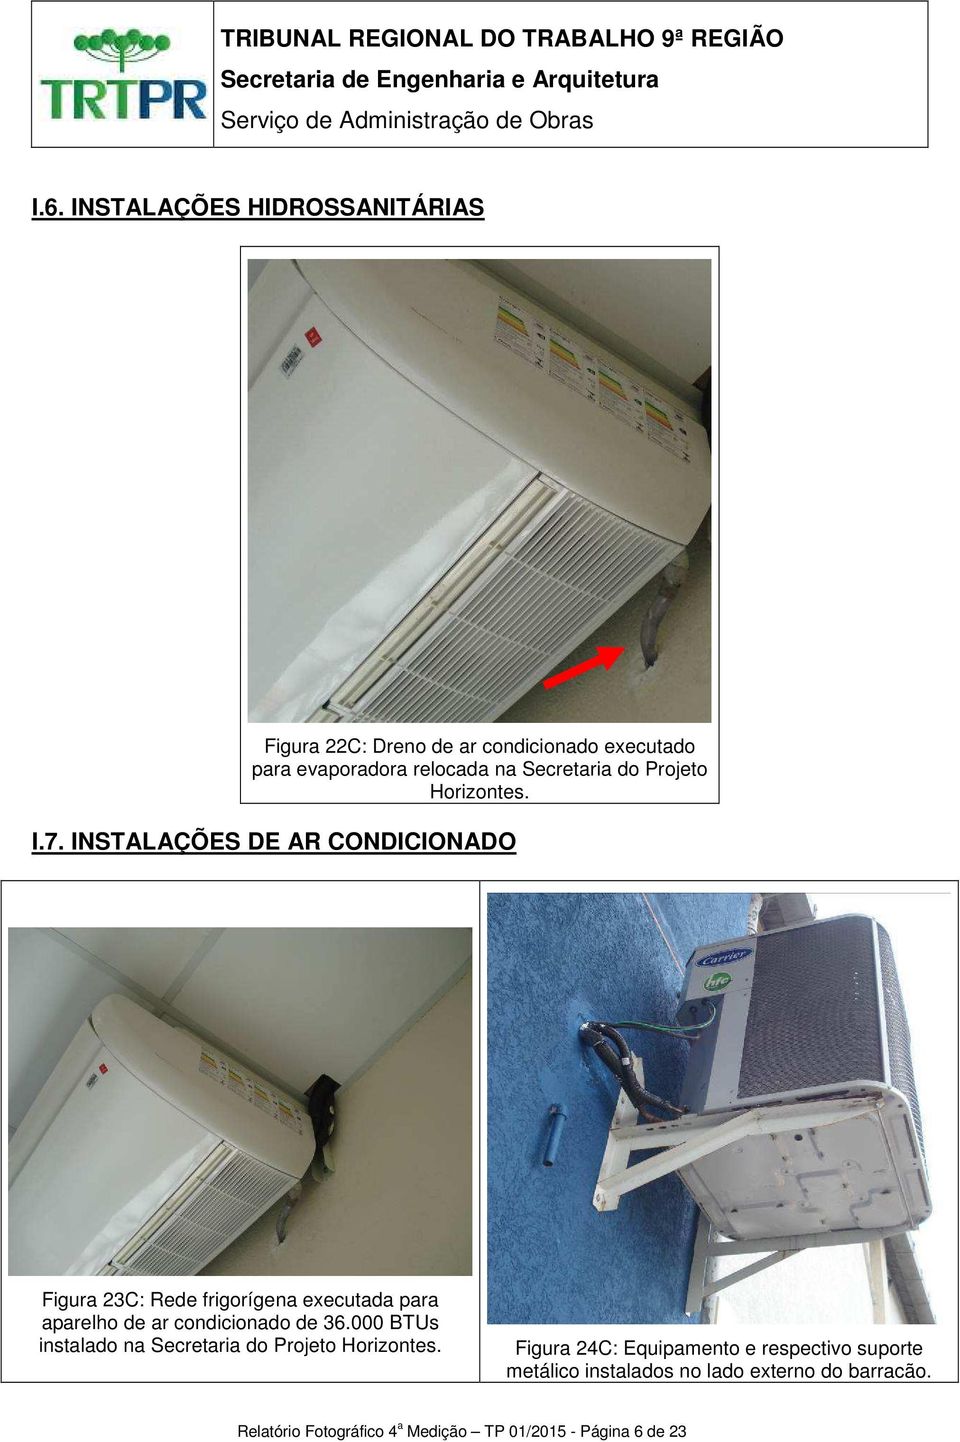 INSTALAÇÕES DE AR CONDICIONADO Figura 23C: Rede frigorígena executada para aparelho de ar condicionado de 36.